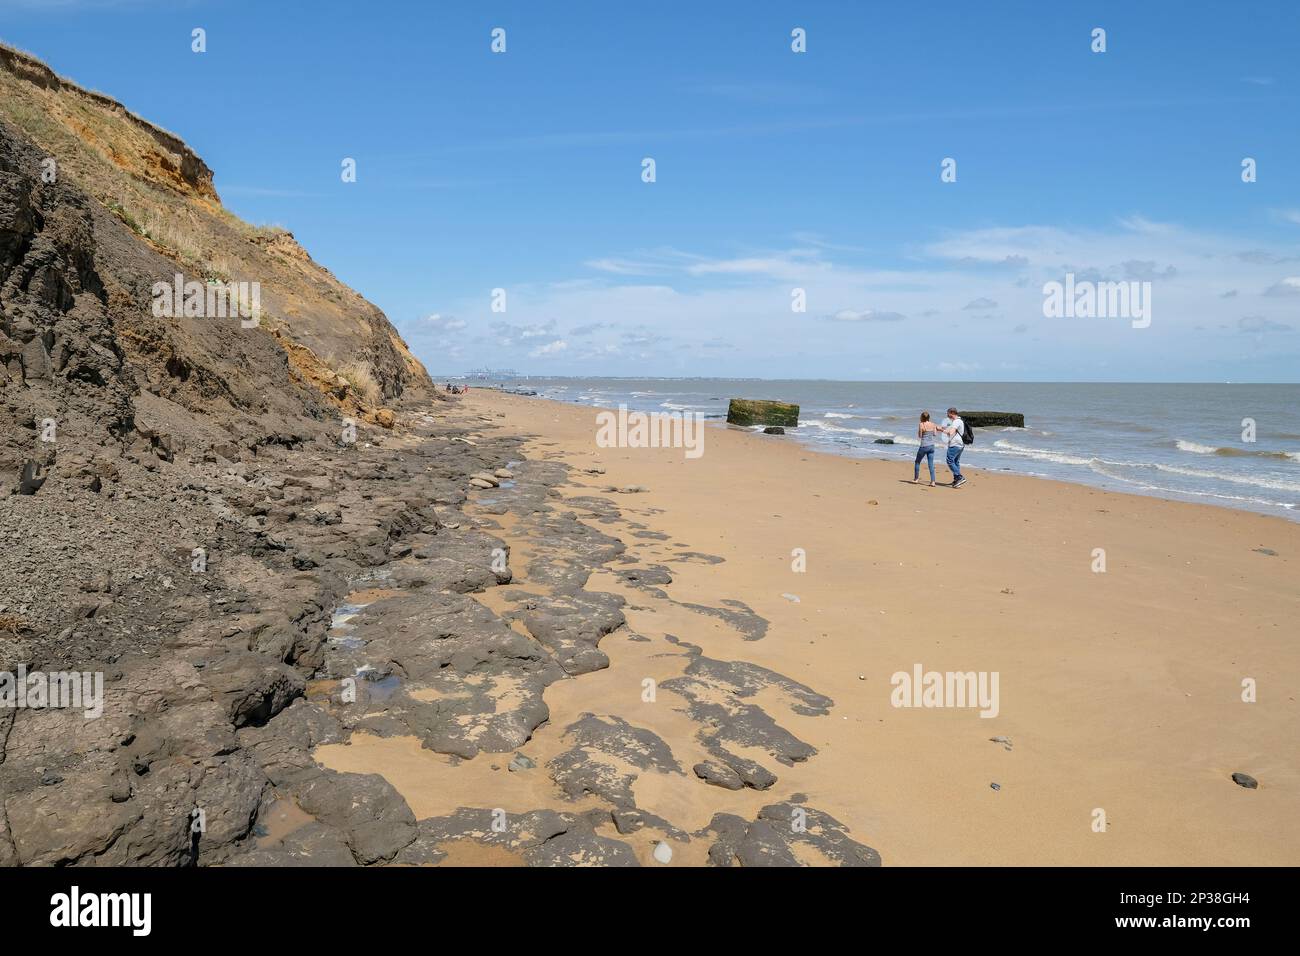 Erosión costera / caída en la playa en Walton-on-the-Naze, Essex, Reino Unido. Foto de stock